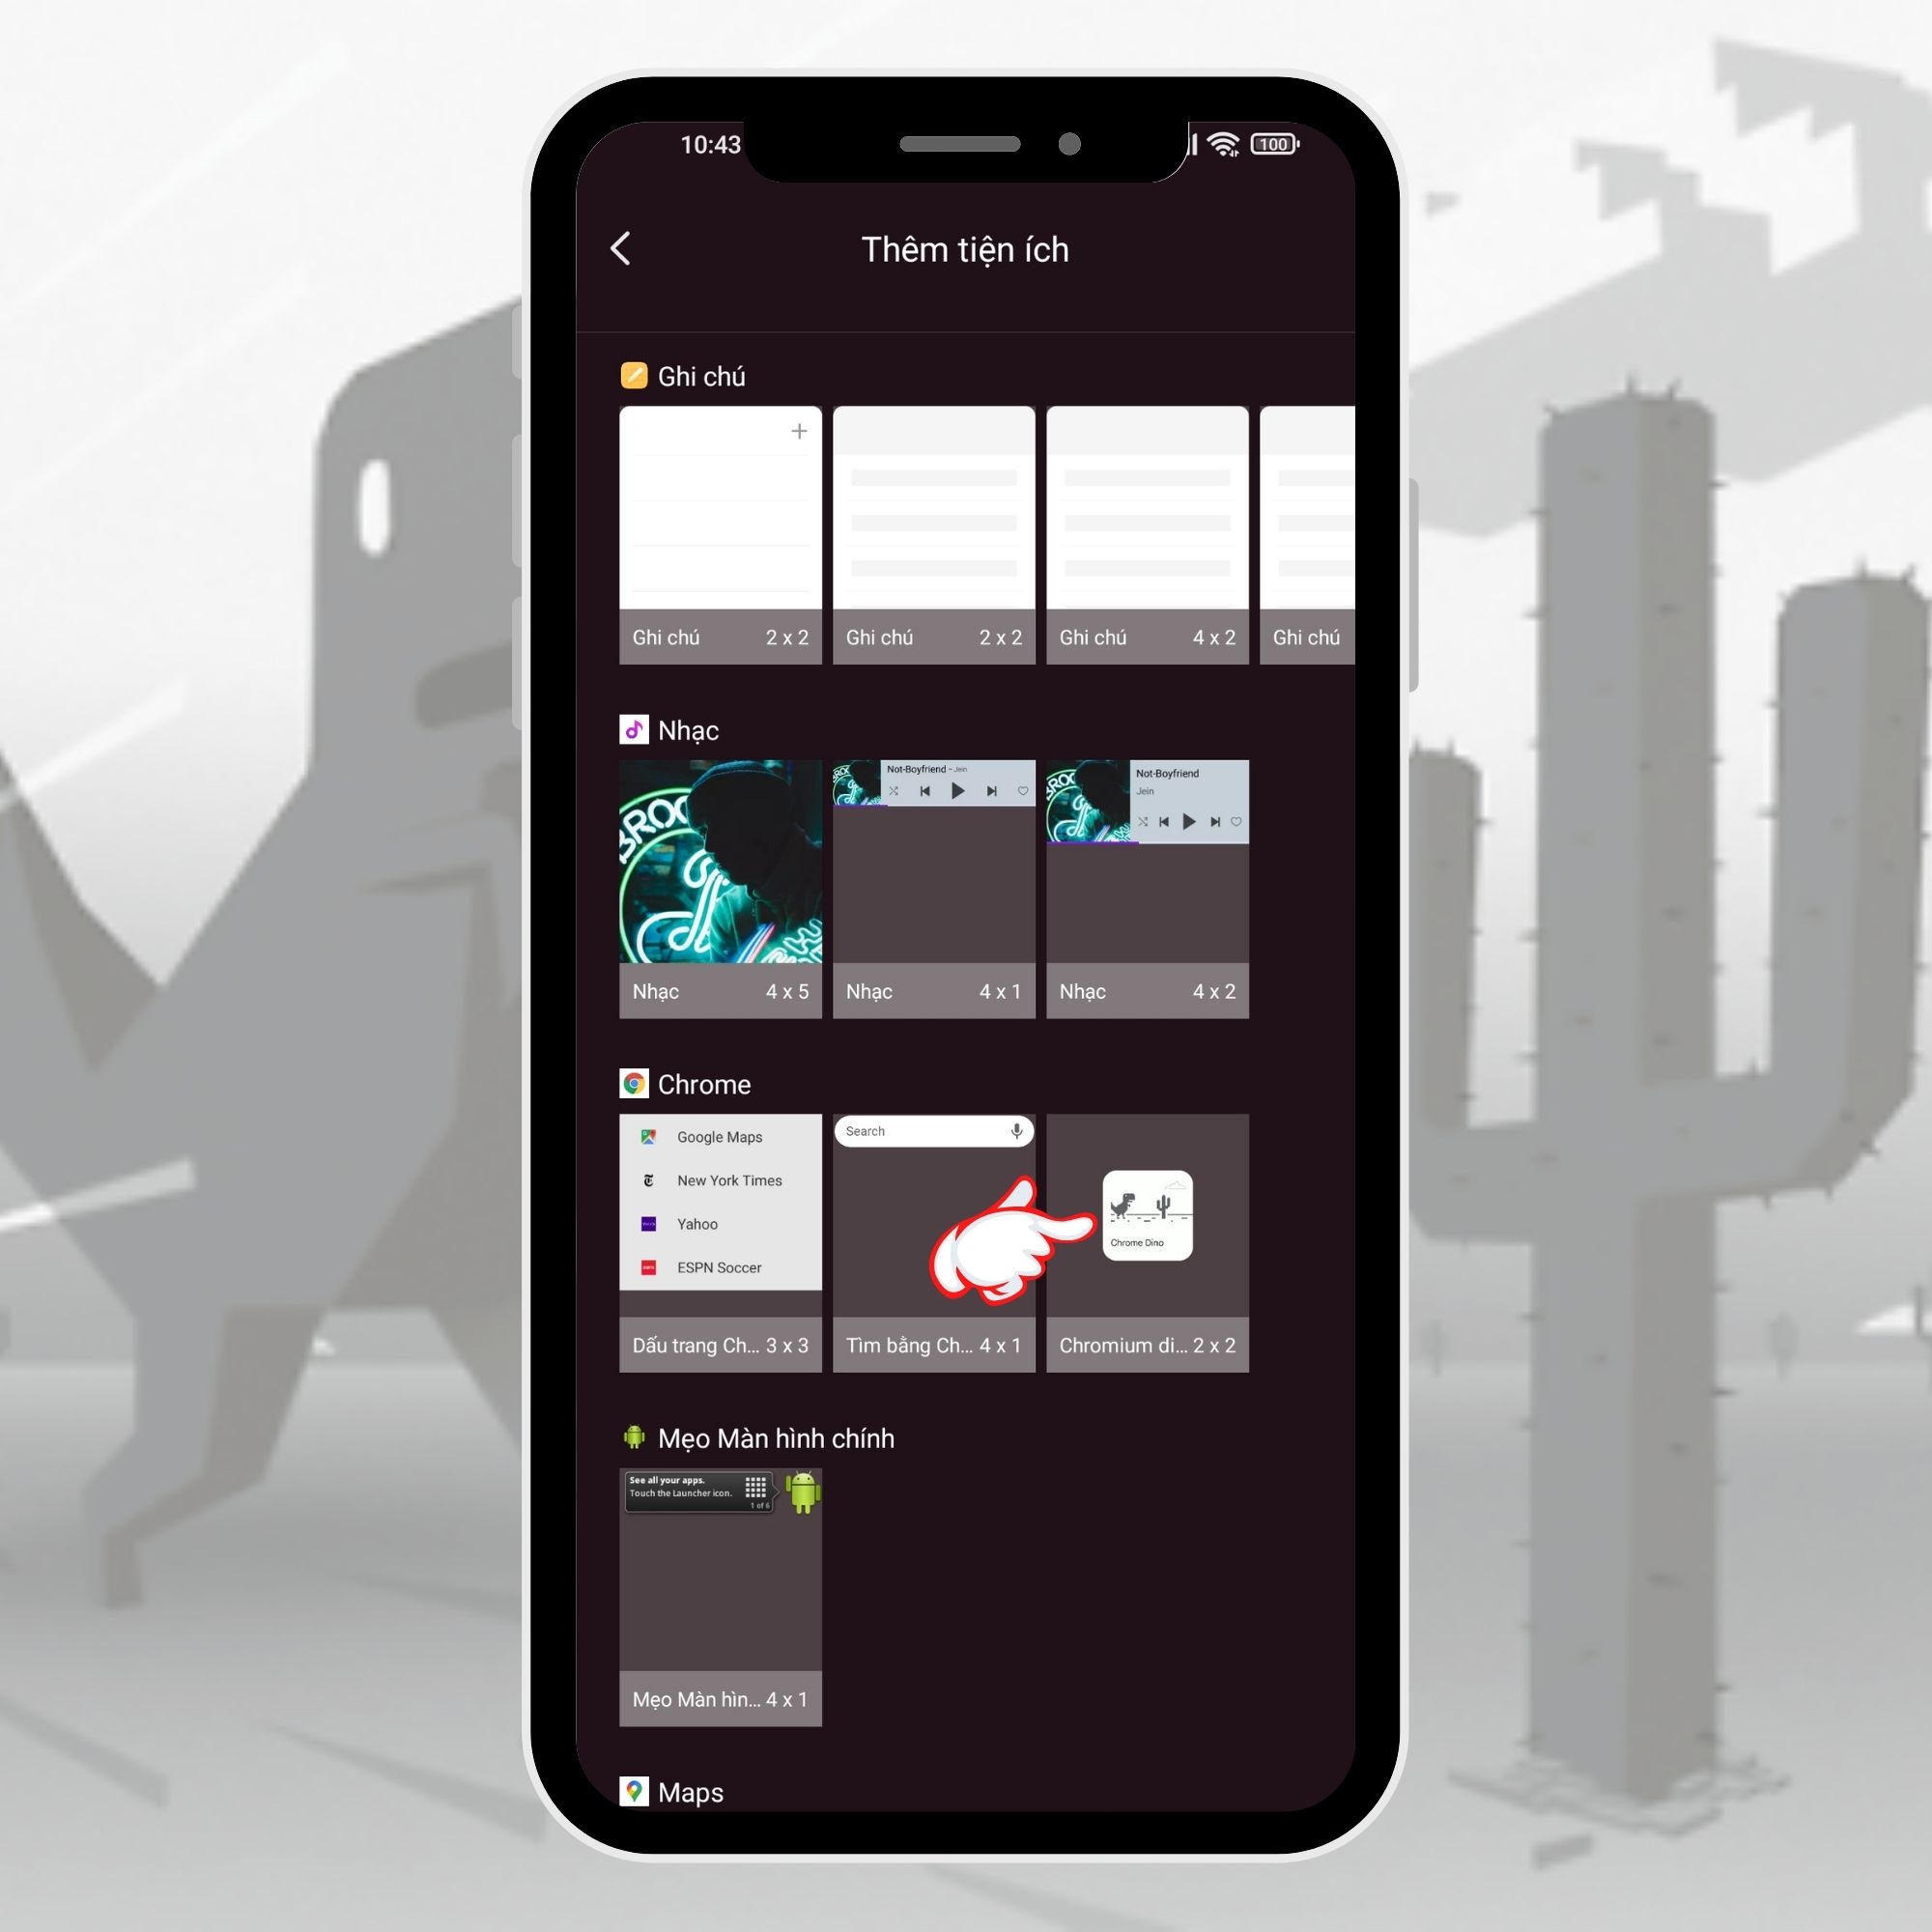 Vuakiemhiep - Trang thông tin công nghệ mới nhất 5-28 Mang widget của tựa game khủng long "huyền thoại" lên màn hình Android cực đơn giản 